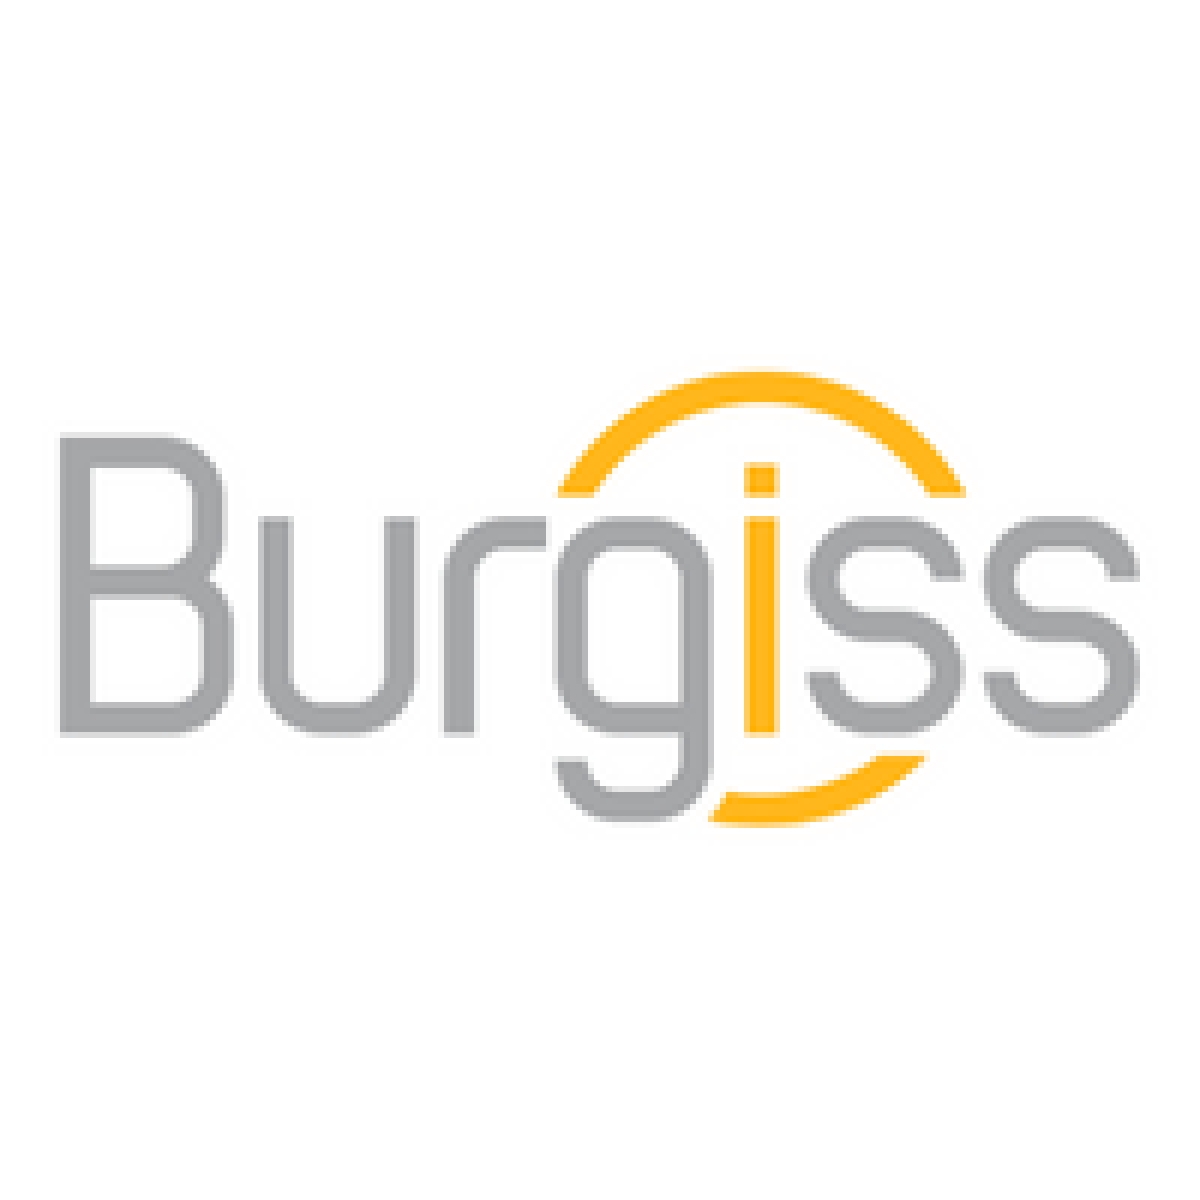 Burgiss logo